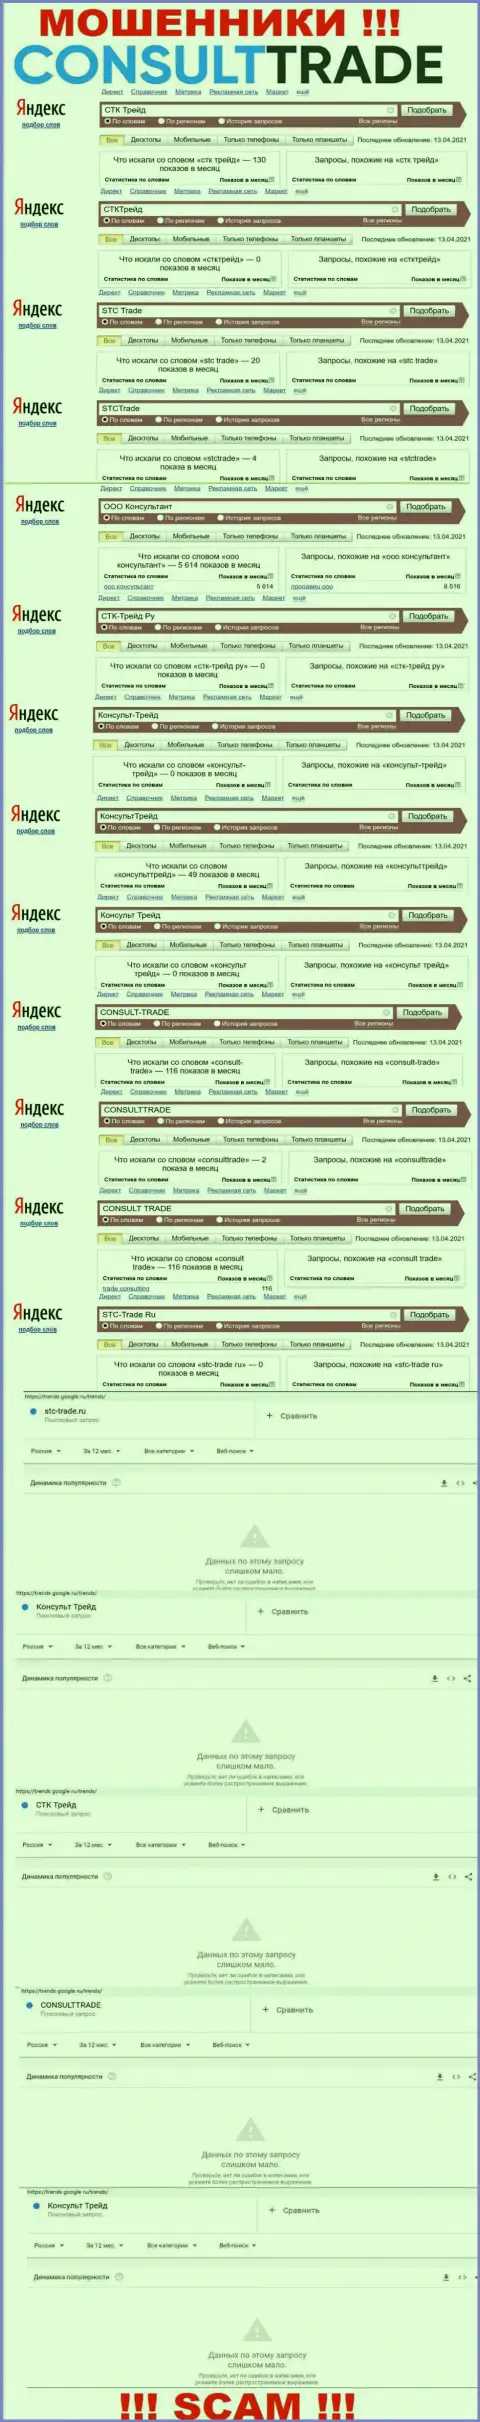 Скриншот статистических данных запросов по противозаконно действующей компании ООО Консультант